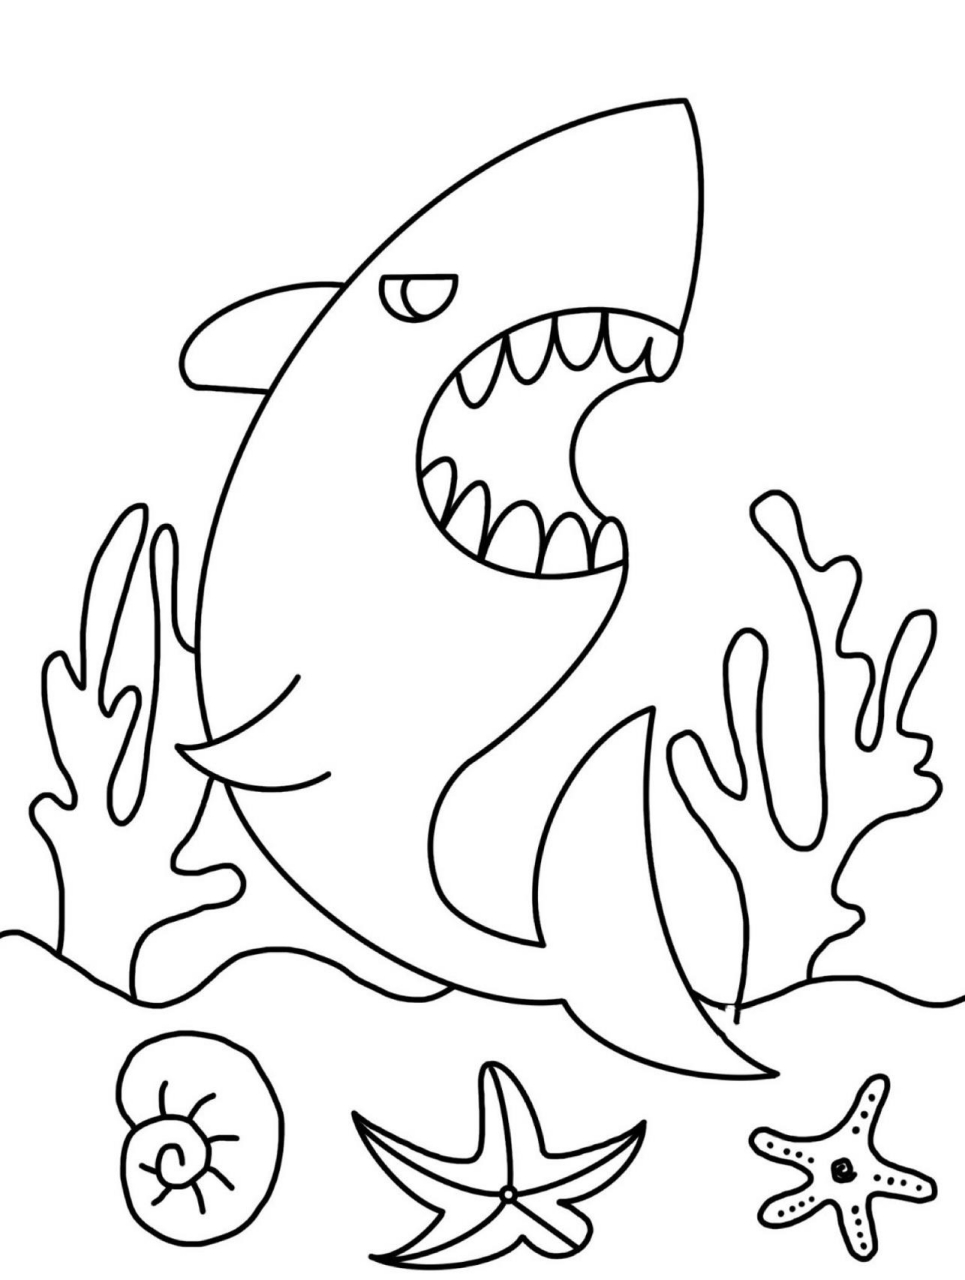 大鲨鱼简笔画大全图片